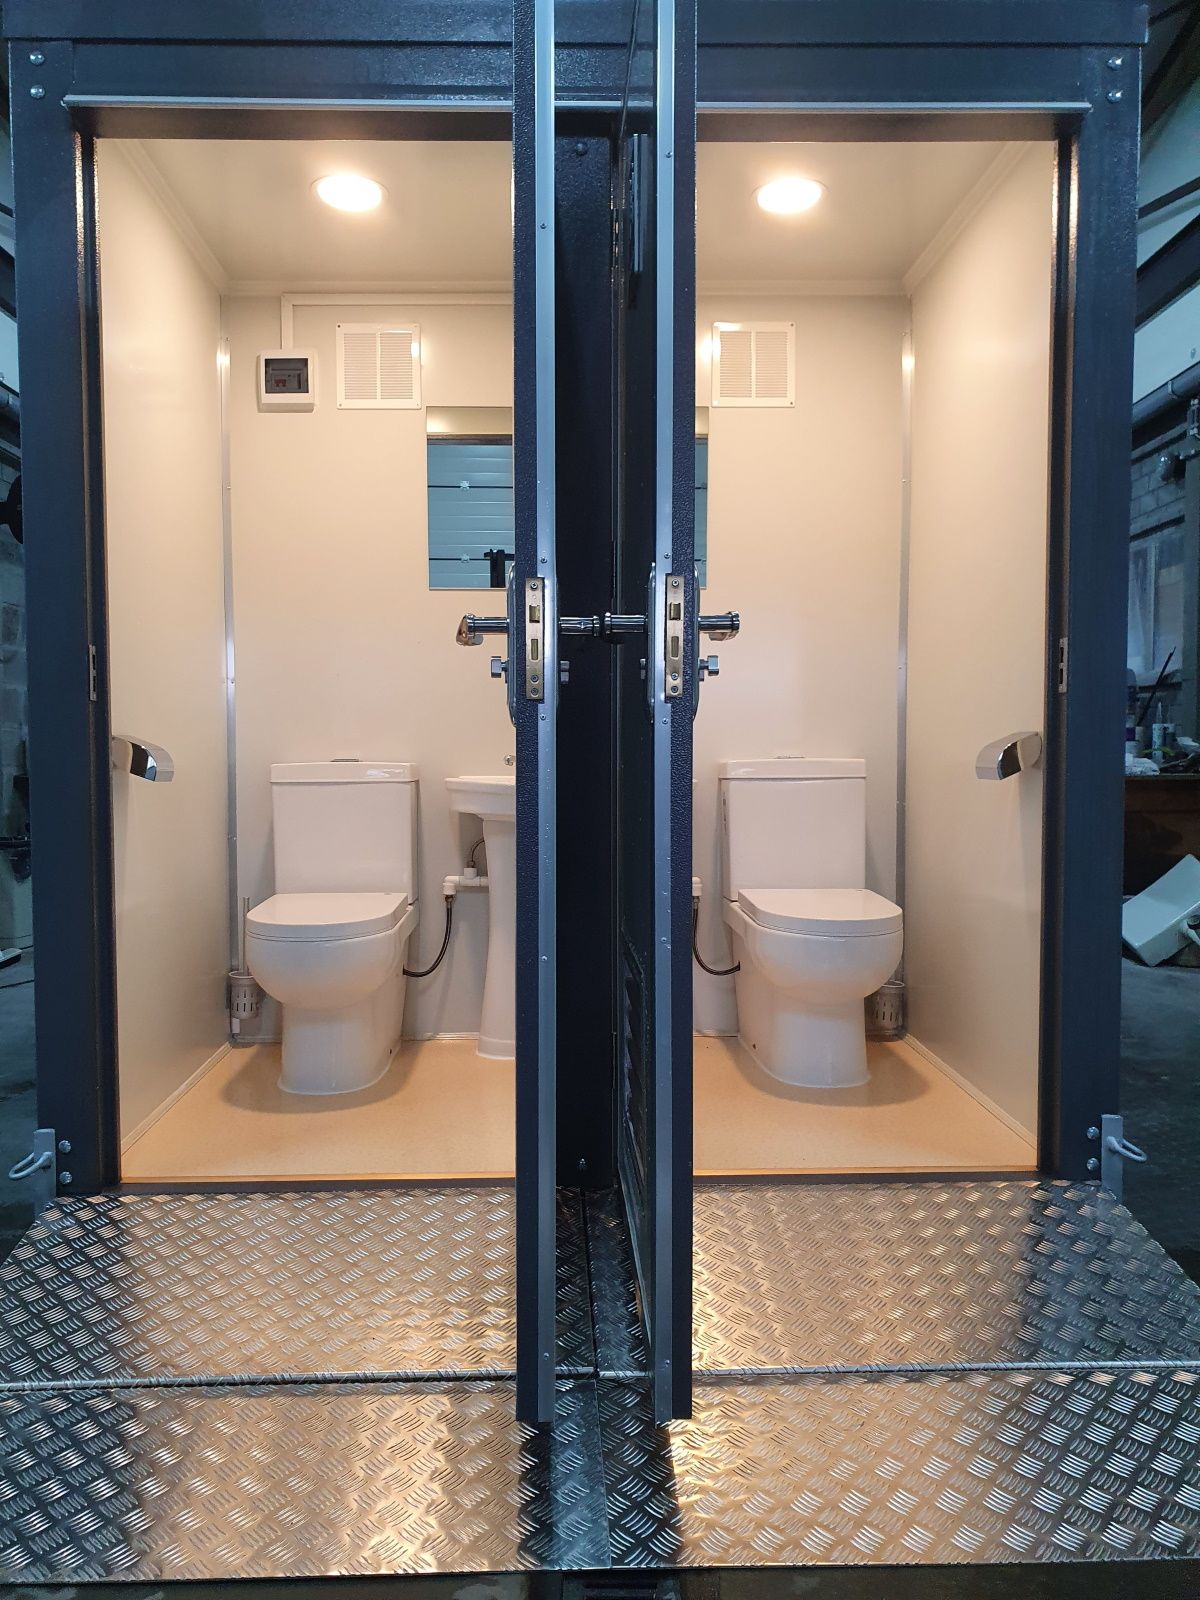 location toilette wc mobile compact